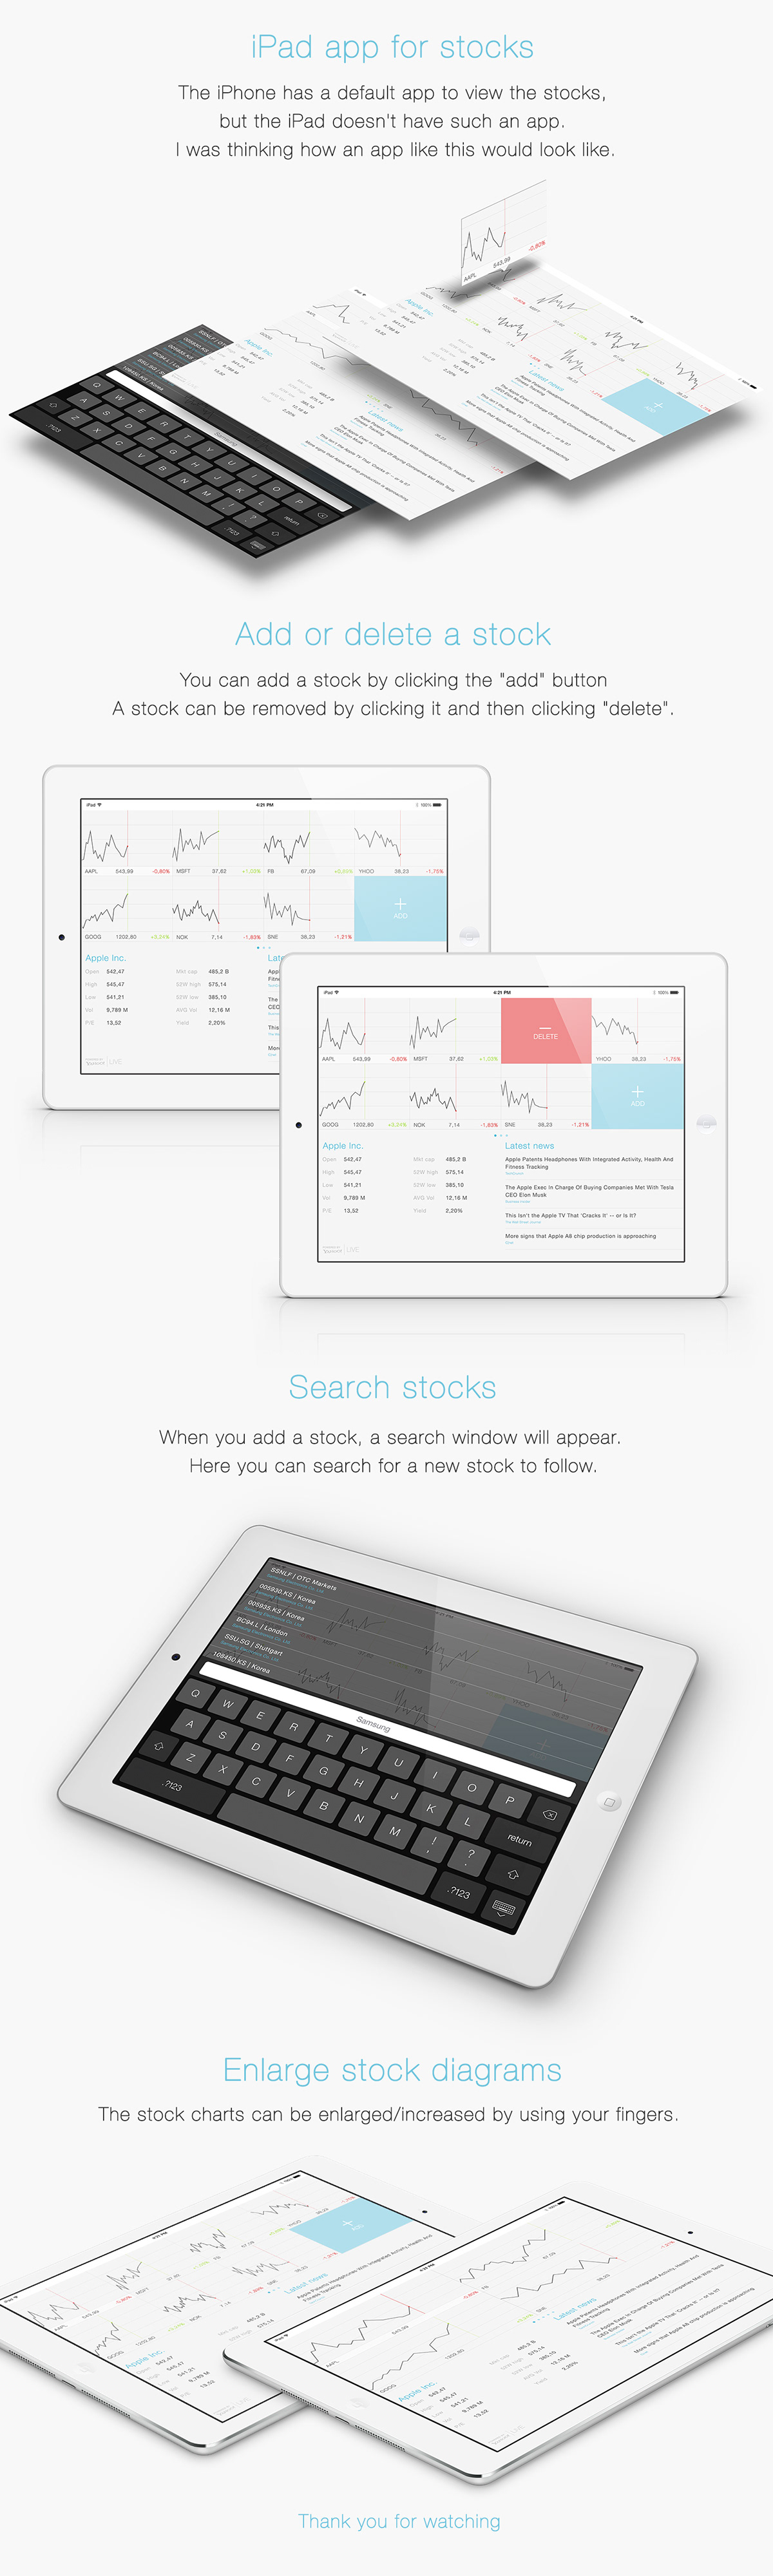 iPad stocks MINI app ios